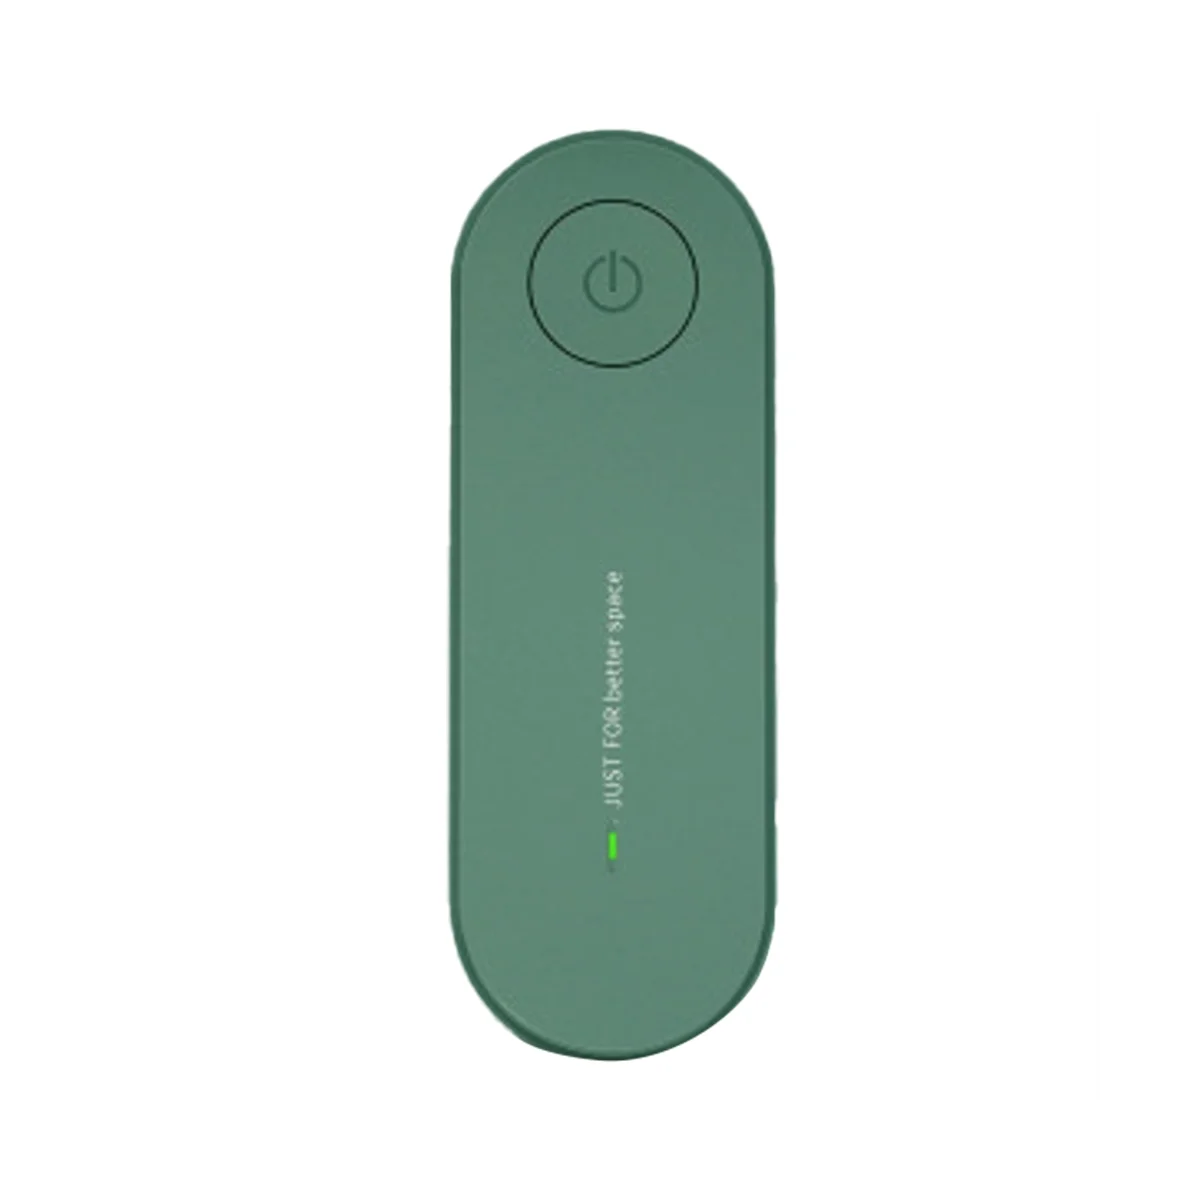 Ligue Purificador de Limpeza Mini AtmosphereIonizer Para Remover a Fumaça Portátil Desodorante Green Plug UE